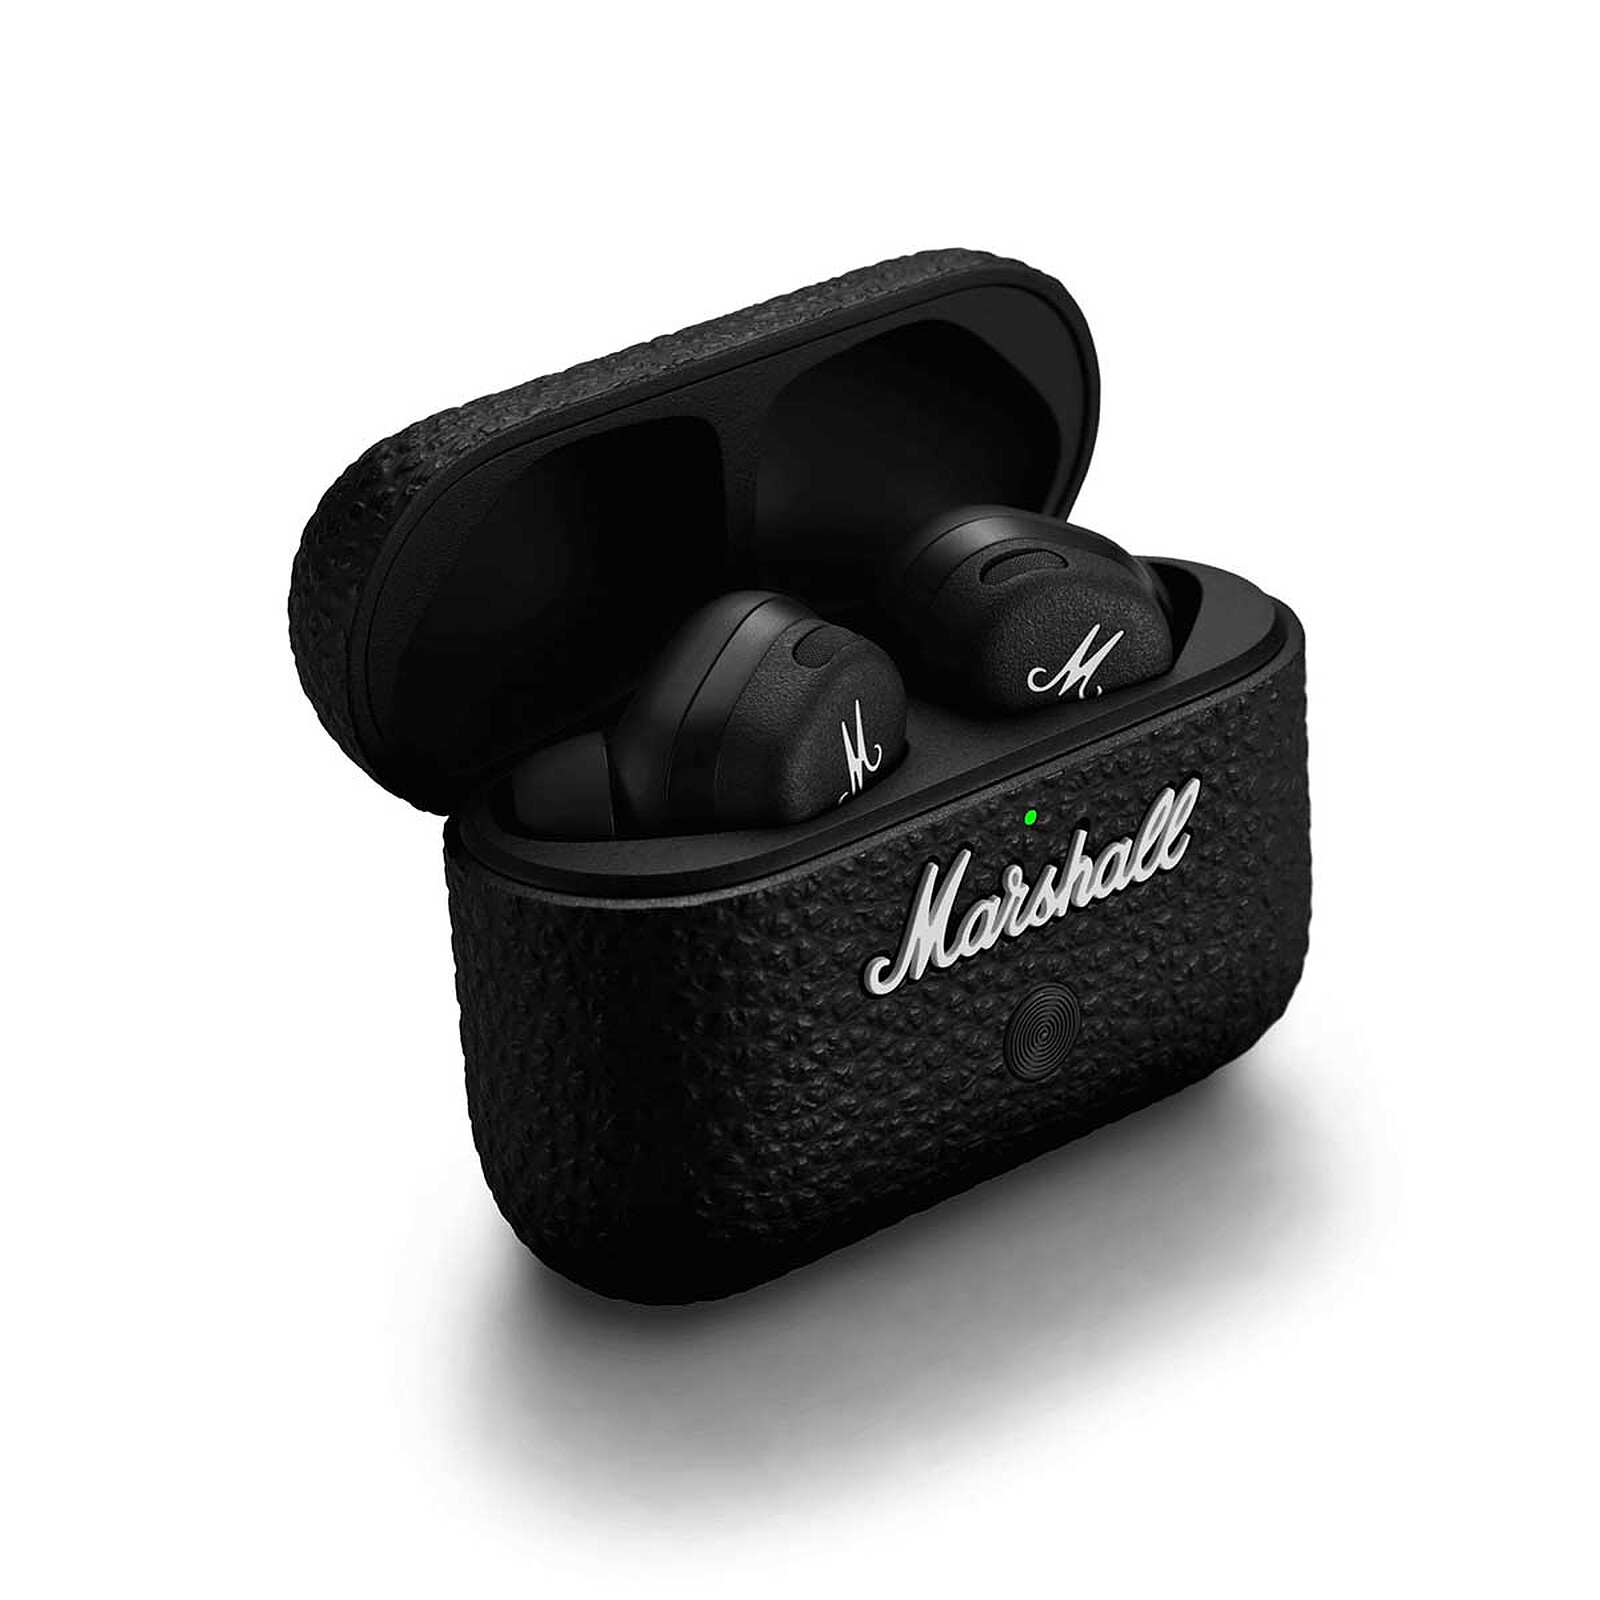 Ecouteurs sans fil Mode II Noir MARSHALL : les écouteurs à Prix